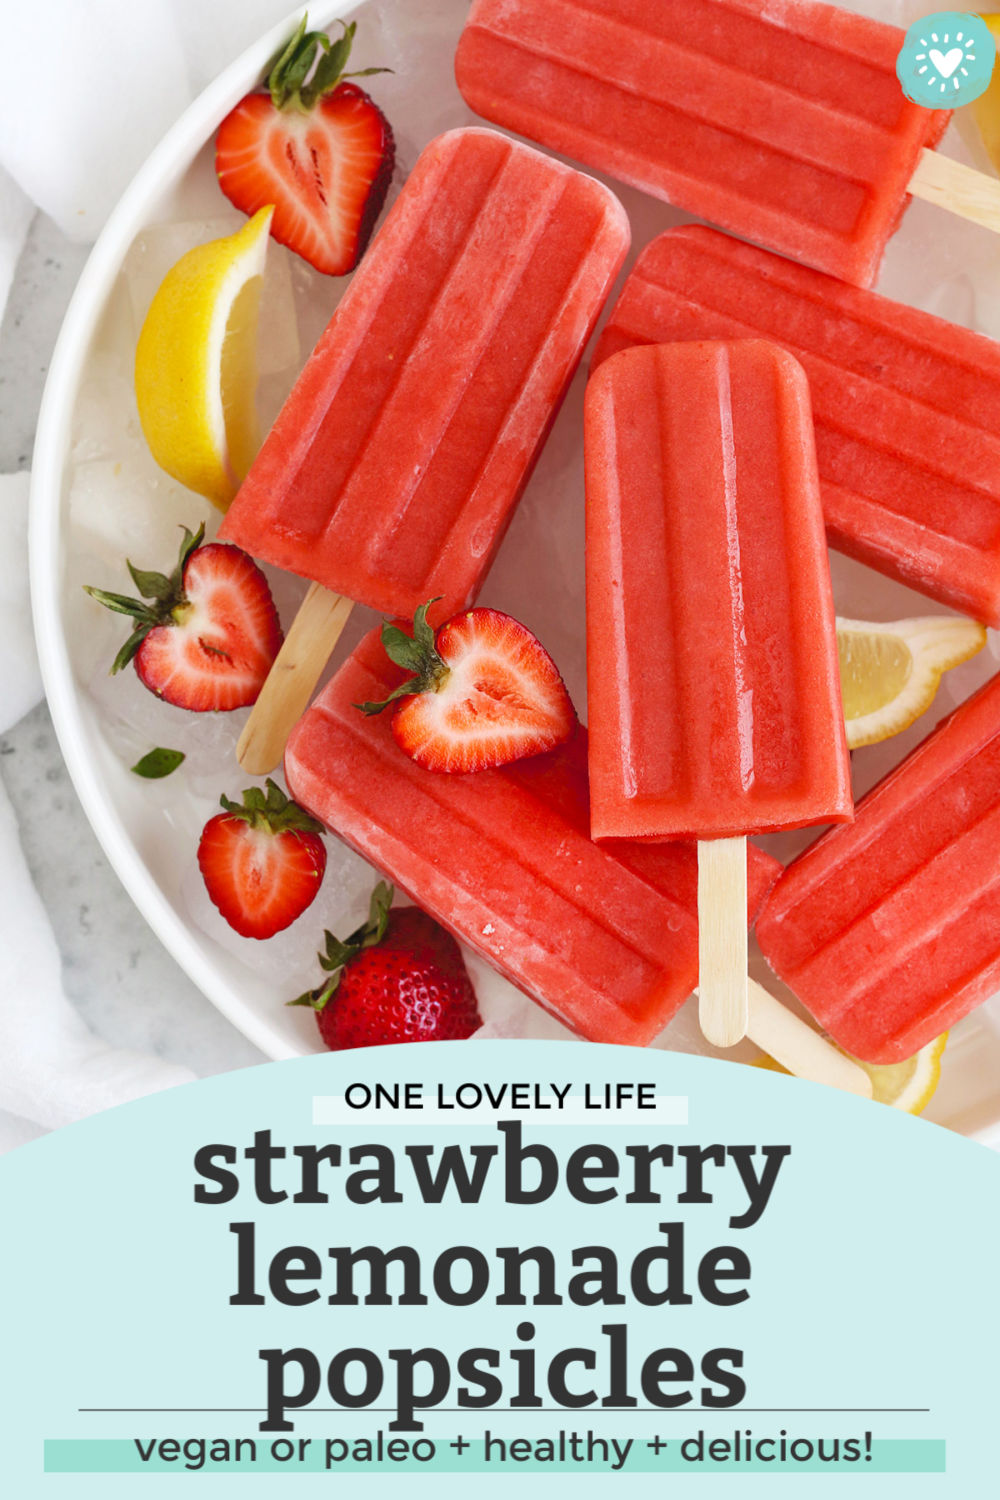 Strawberry Lemonade Popsicles from One Lovely Life